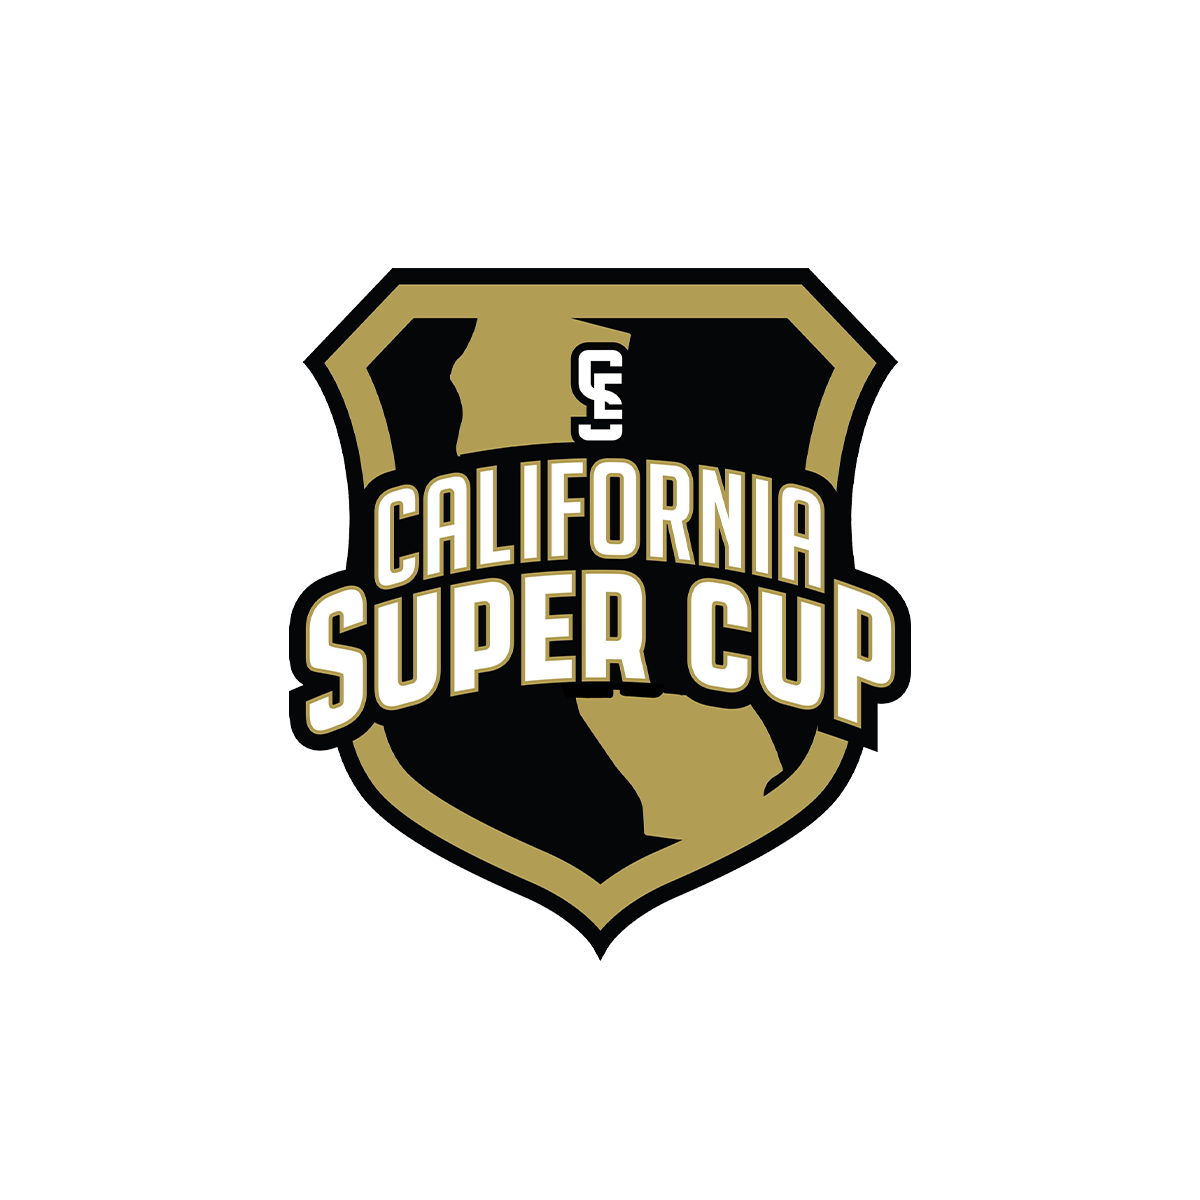 CALI_SUPER_CUP_LOGO